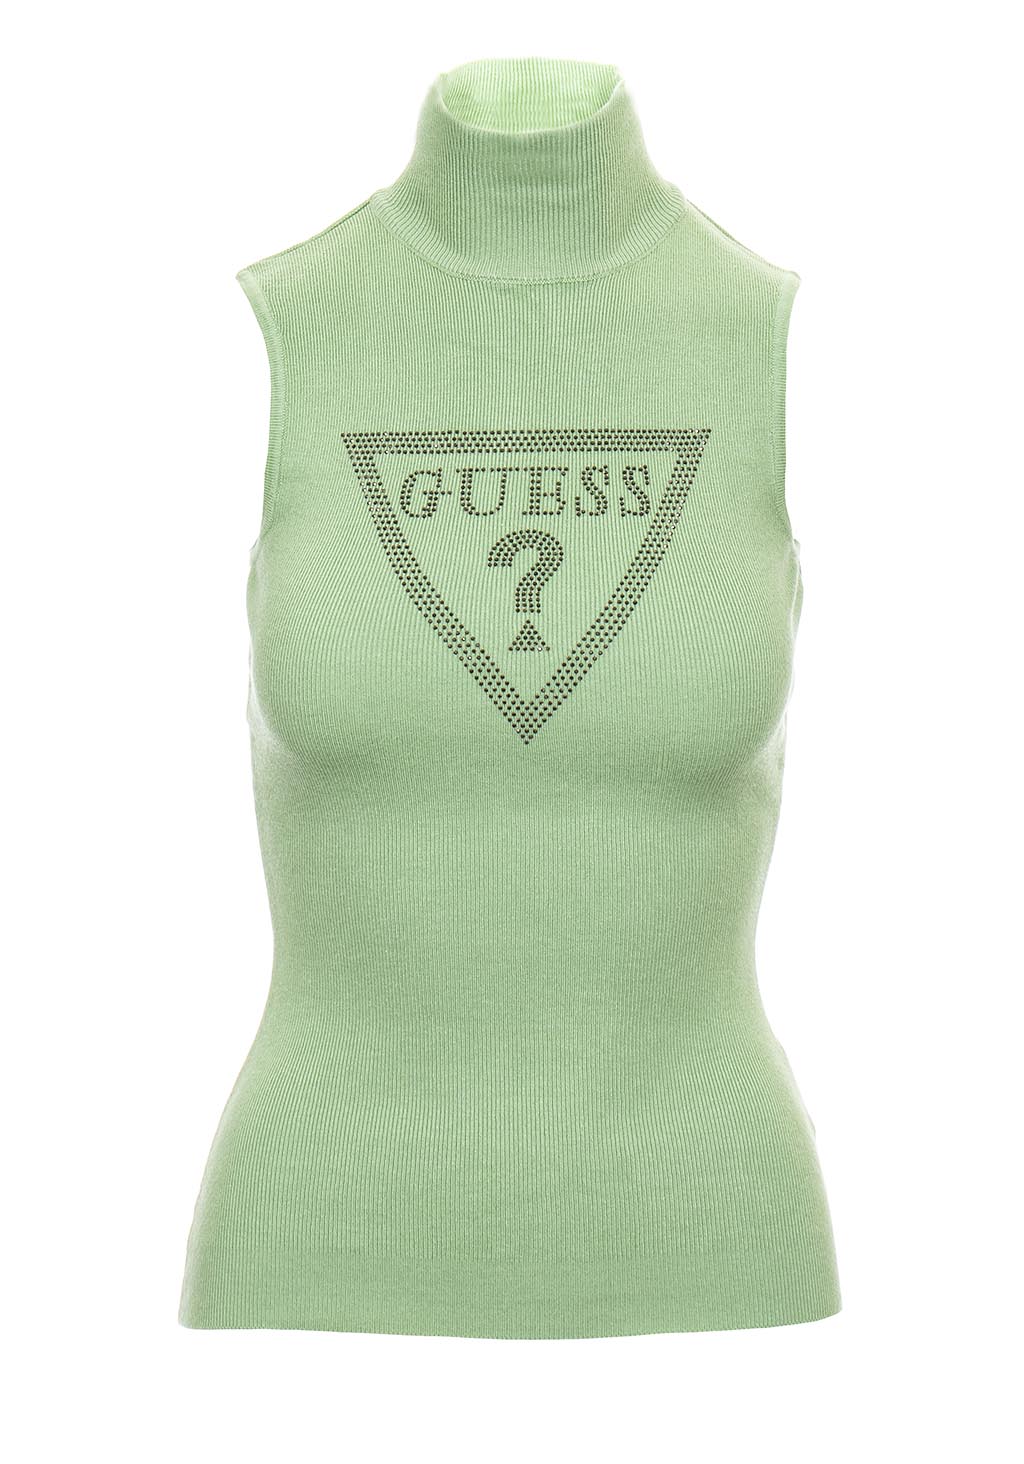 Guess dámský svetr bez rukávů hráškově zelený s kamínky Velikost: XS